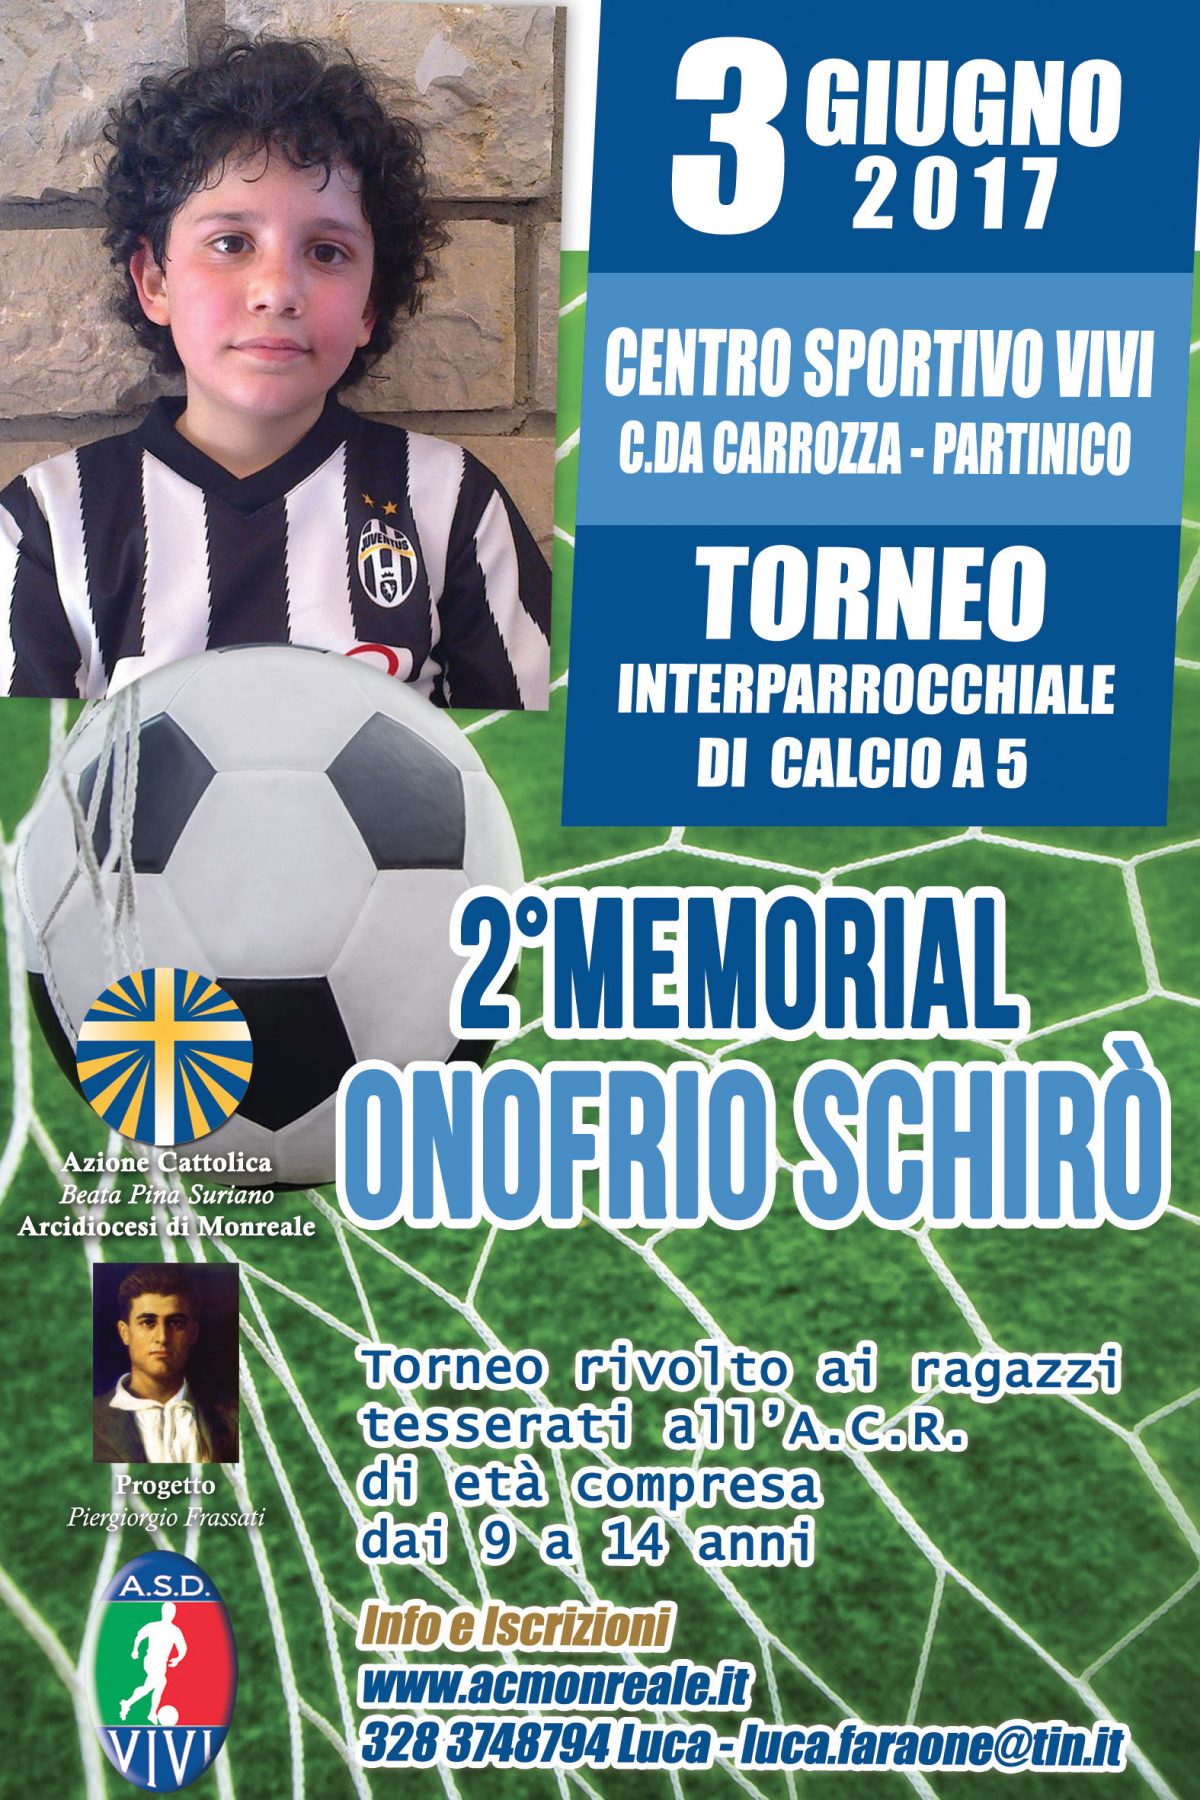 2° Memorial “Onofrio Schirò” – Partinico, 3 Giugno 2017